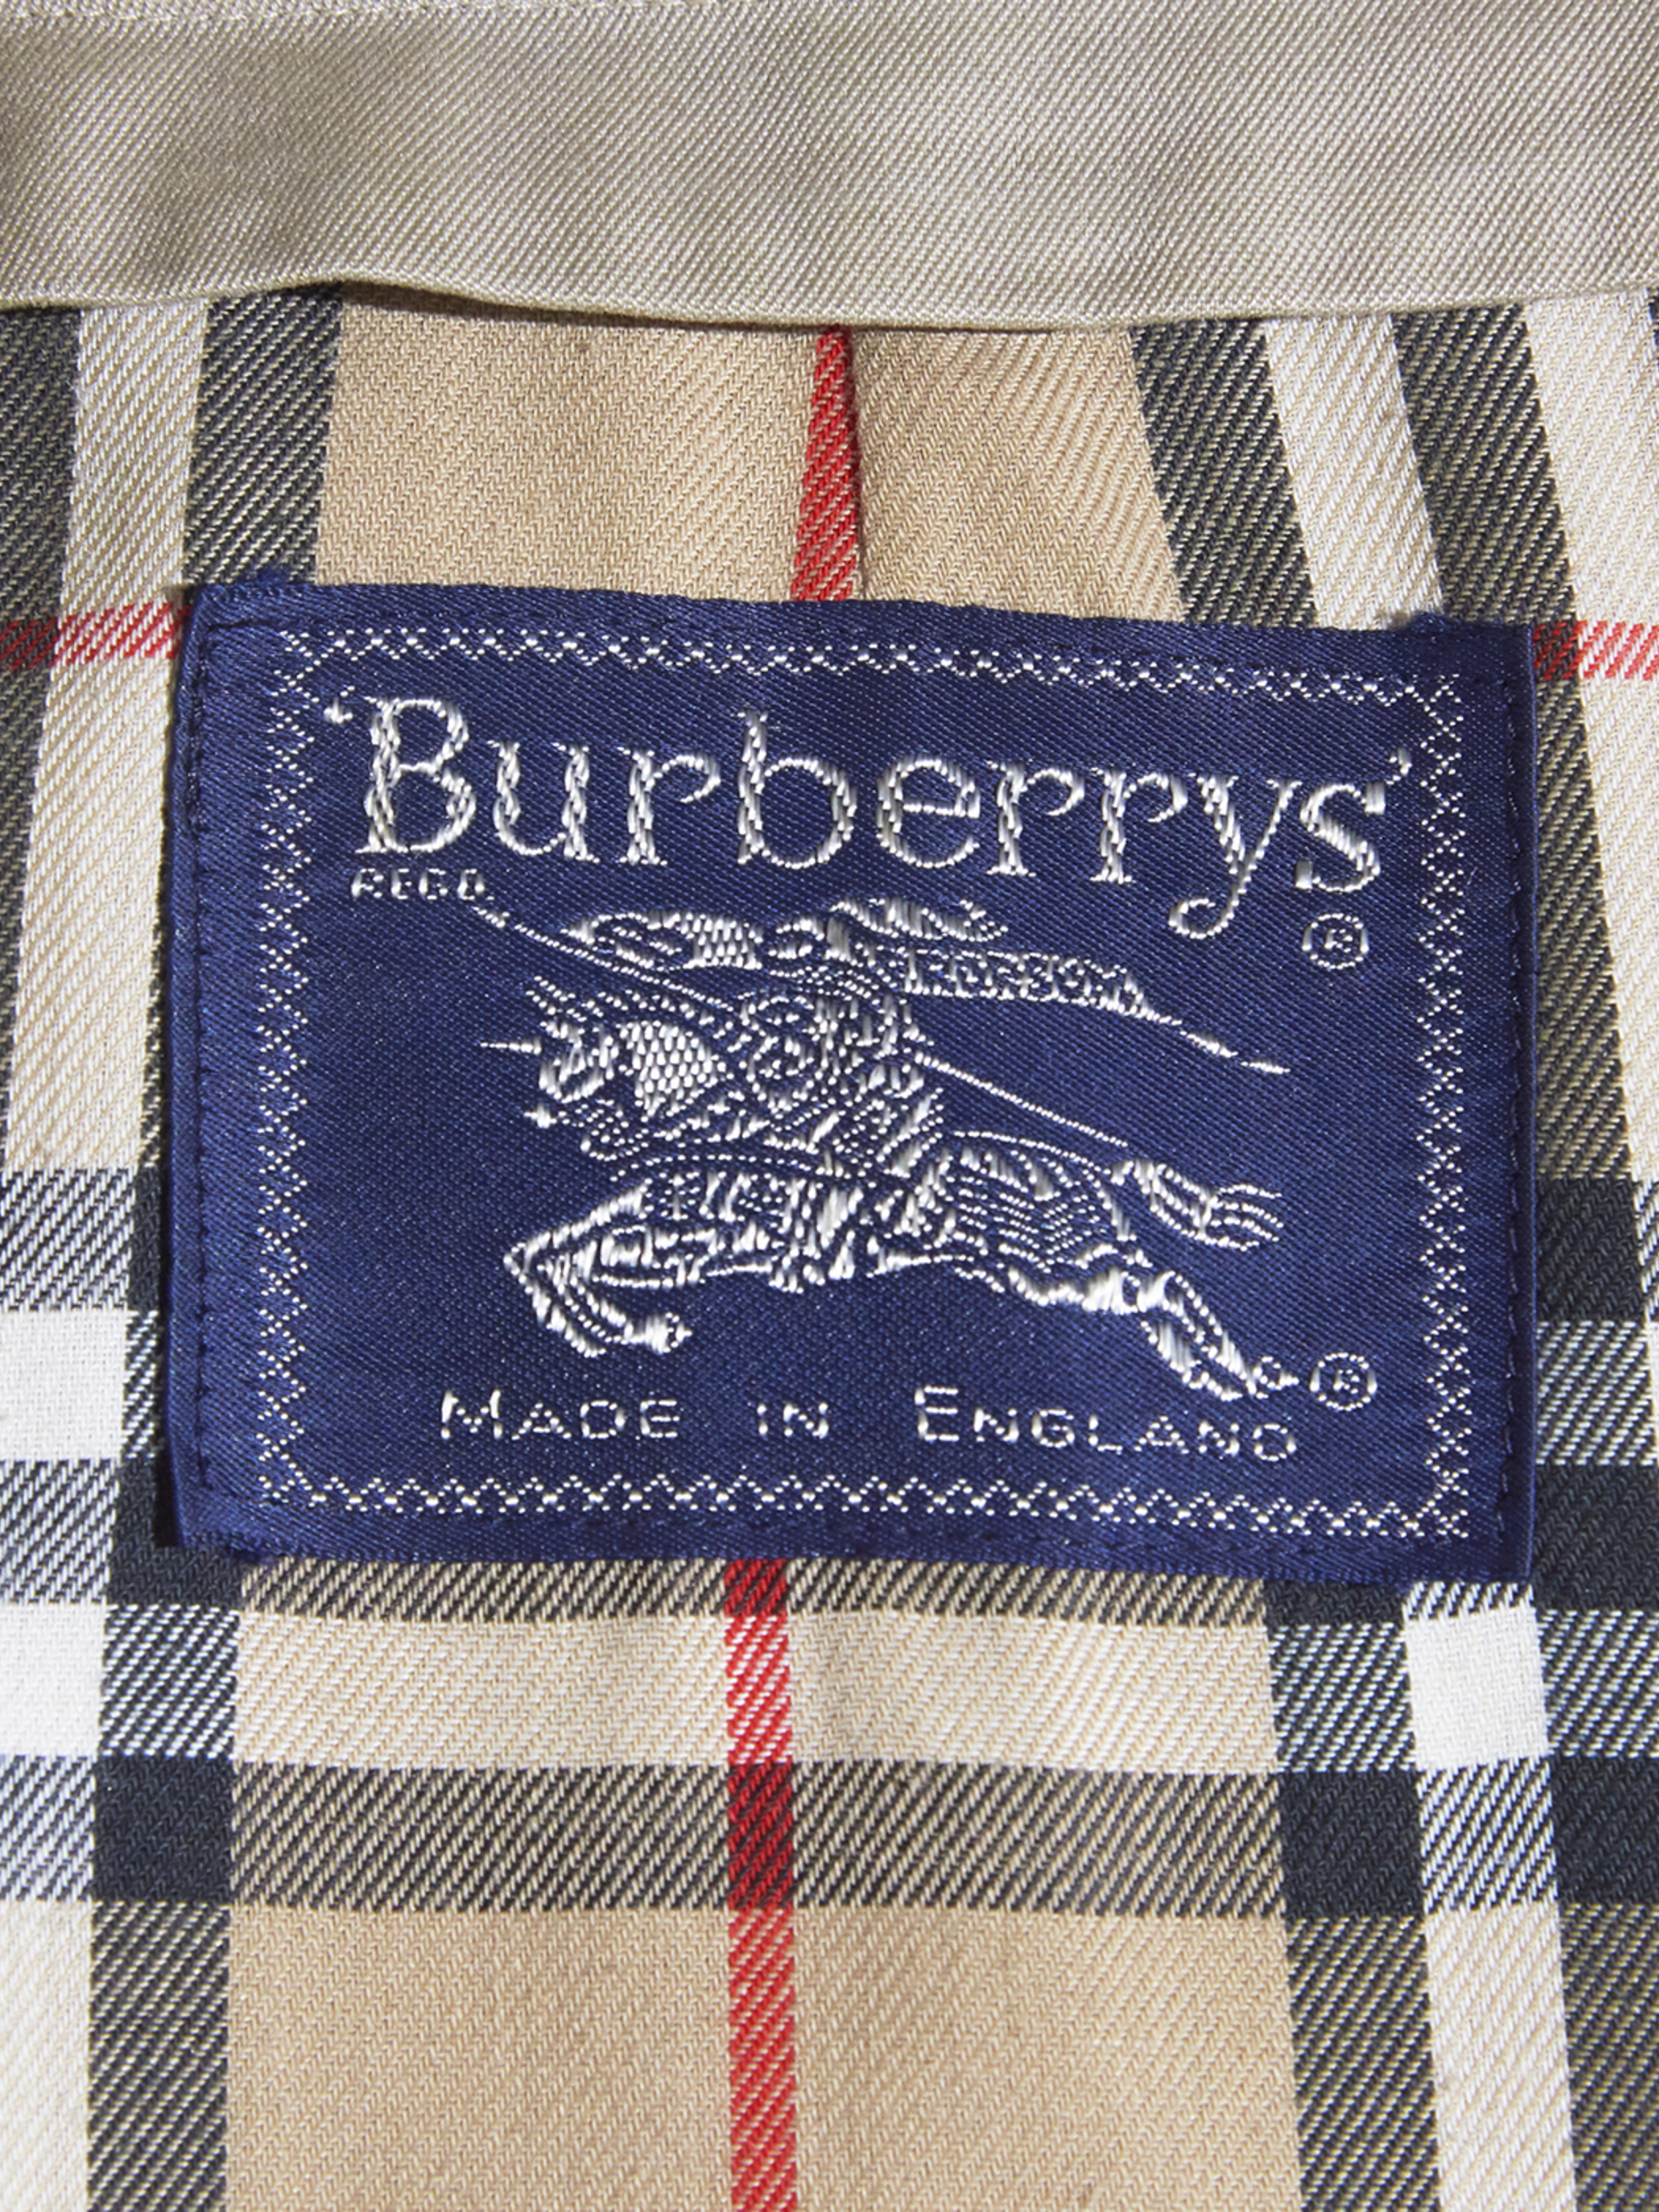 1990s "Burberrys" bal collar coat -BEIGE-